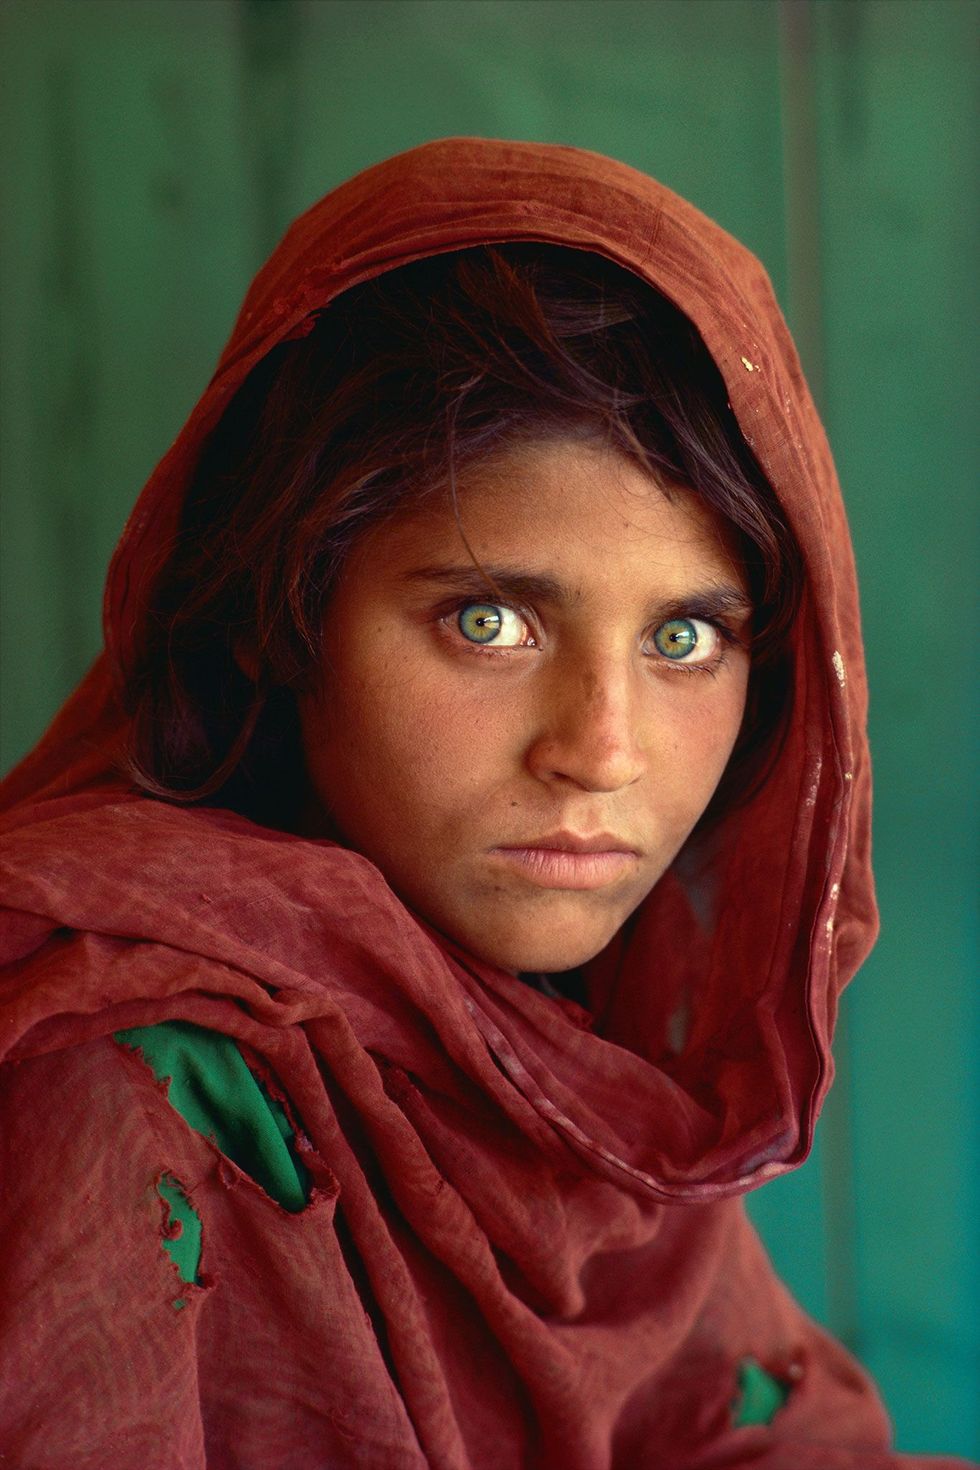 Het portret van Sharbat Gul een Afghaanse vluchteling met de mysterieuze ogen stond op de cover van National Geographic in 1985 waarna het jarenlang in harten gegraveerd stond